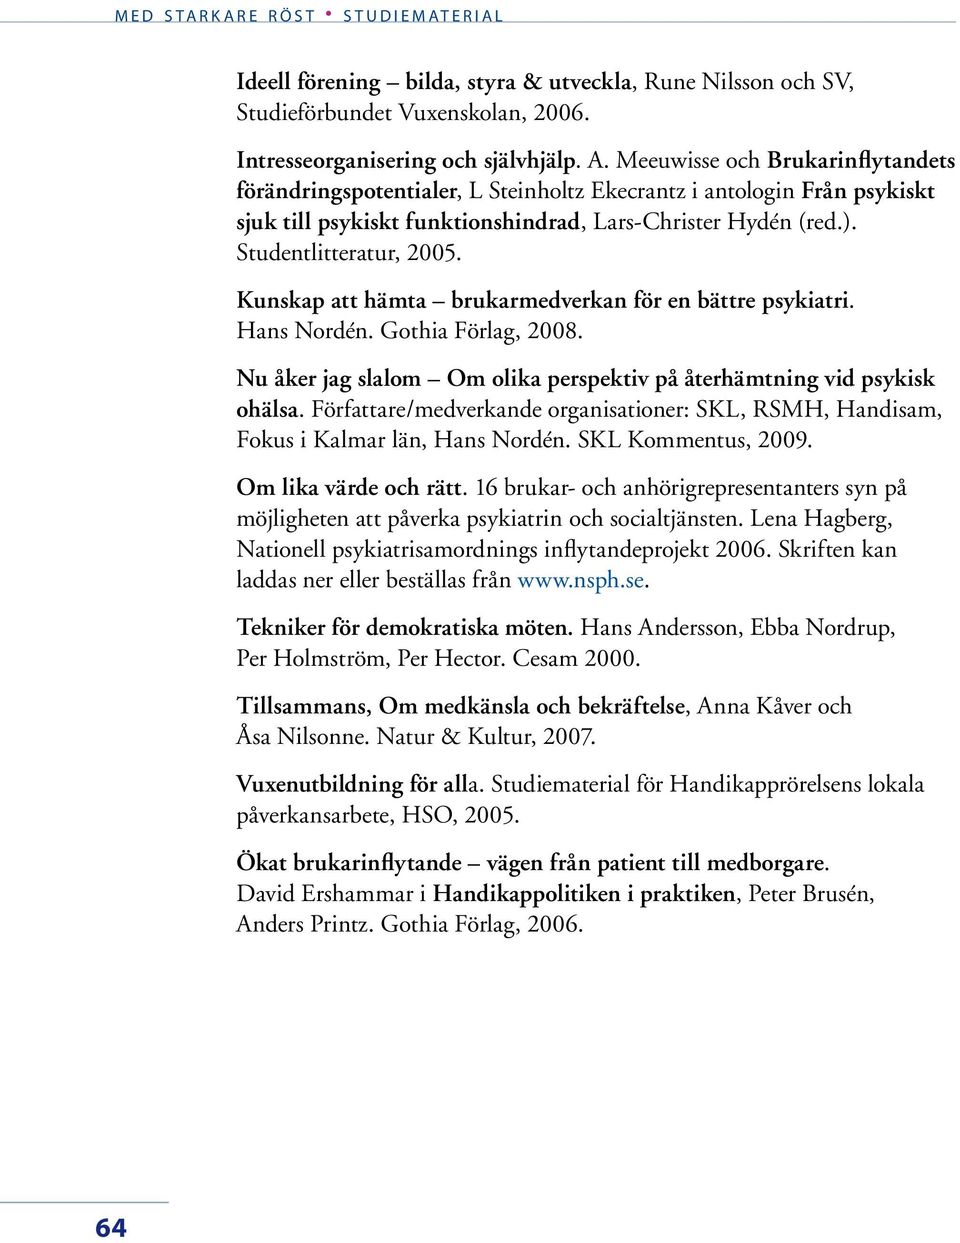 Kunskap att hämta brukarmedverkan för en bättre psykiatri. Hans Nordén. Gothia Förlag, 2008. Nu åker jag slalom Om olika perspektiv på återhämtning vid psykisk ohälsa.